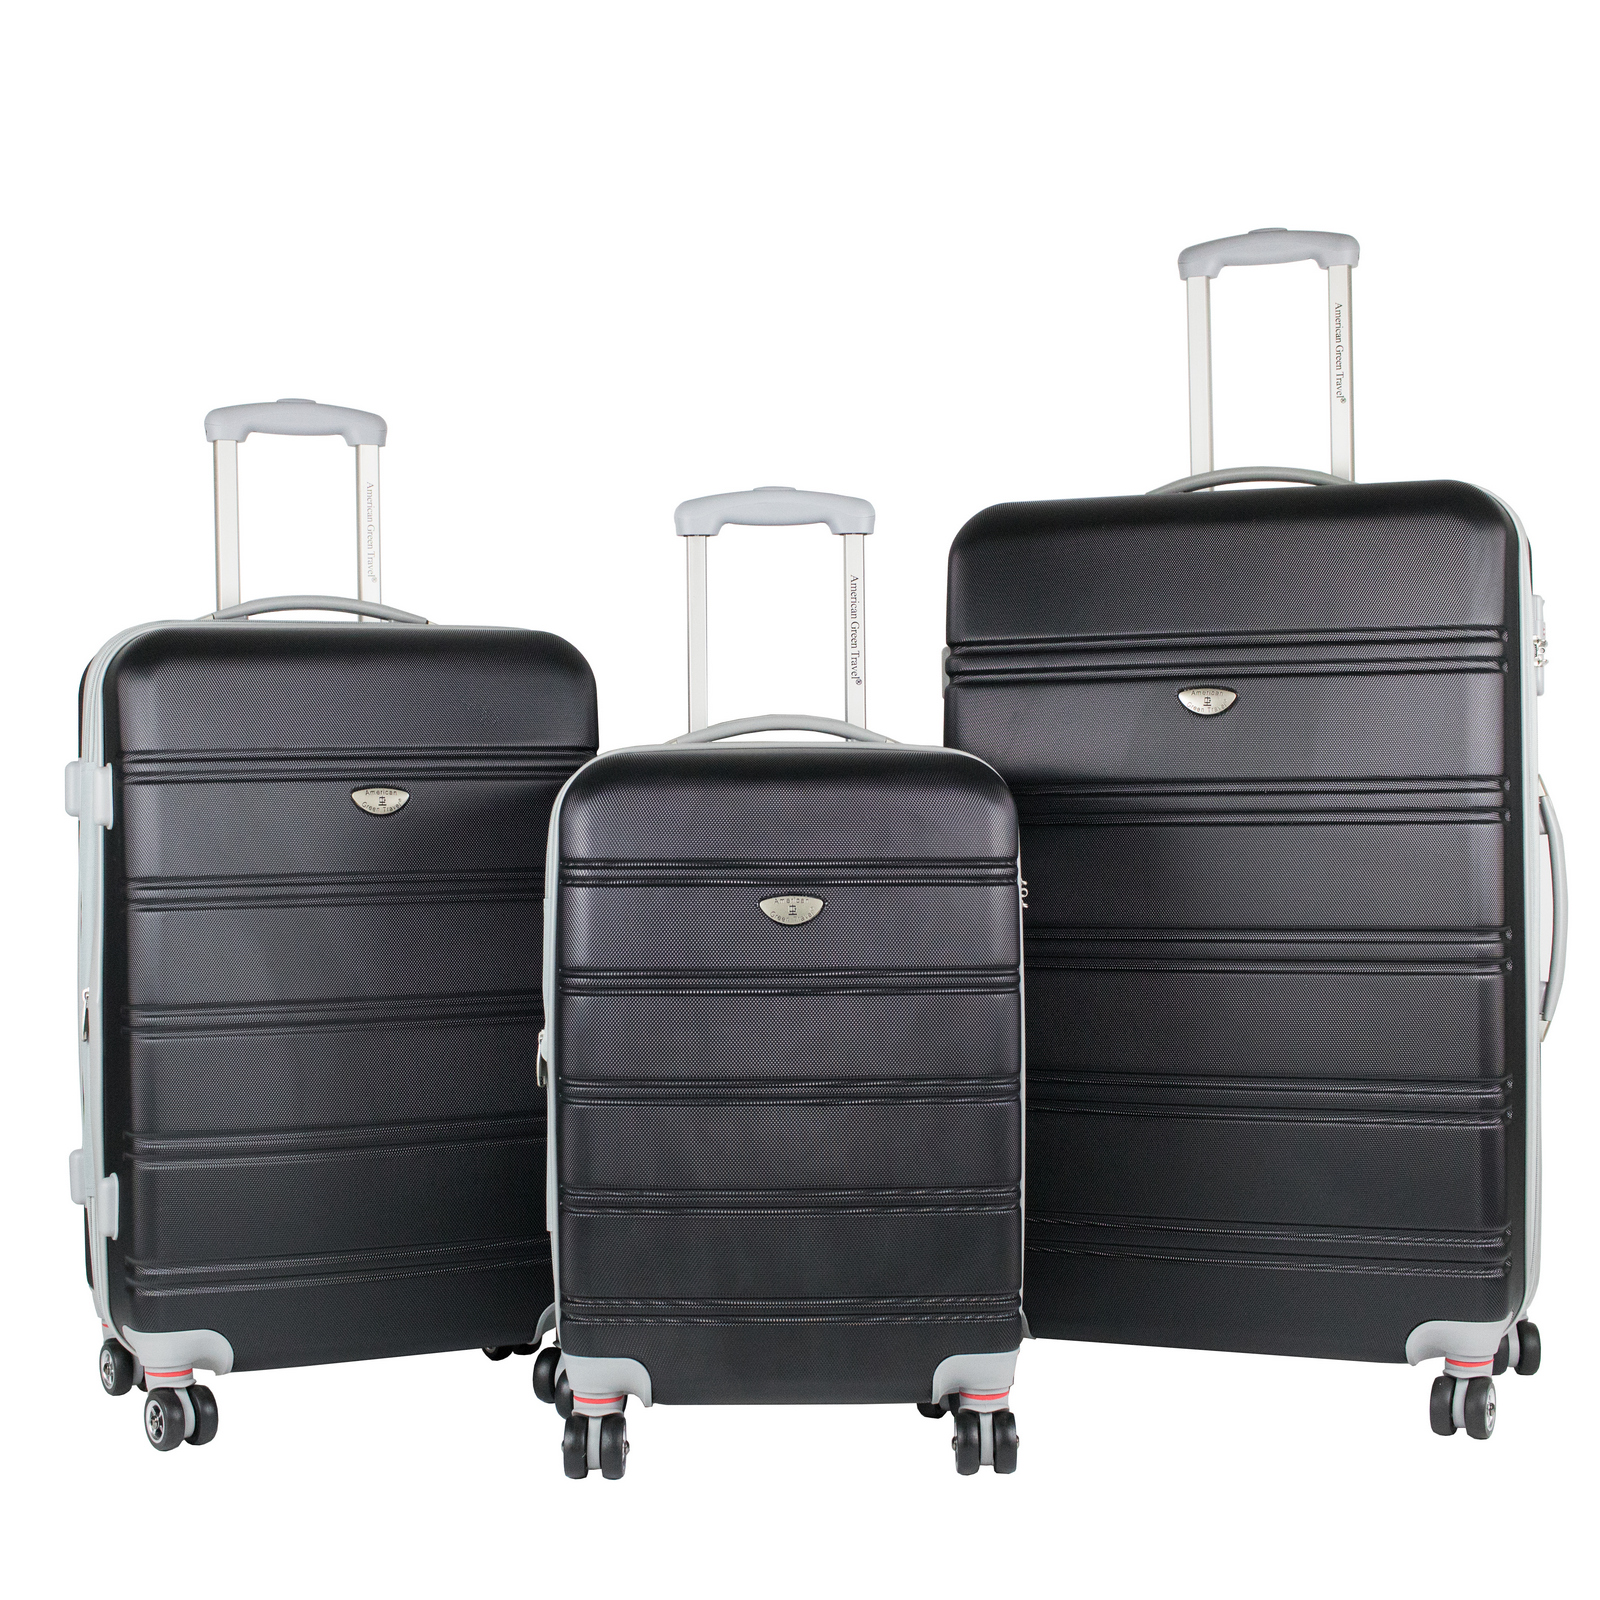 Expandable Hardside Spinner Luggage Set With Tsa Locks, Black - 3 Piece